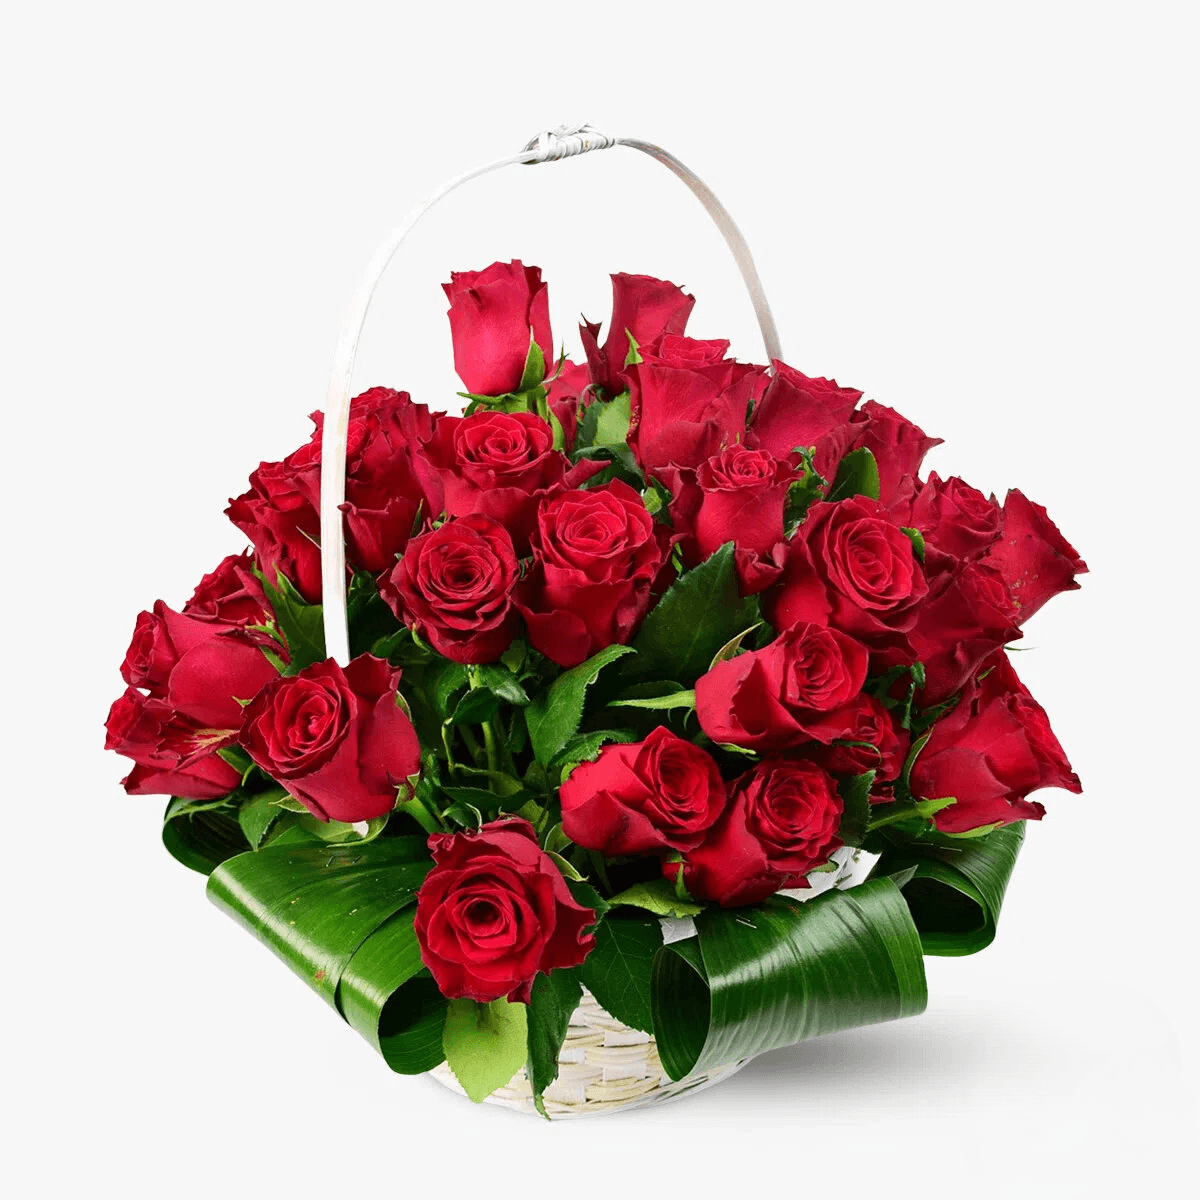 Cos cu flori – 51 trandafiri rosii in cos – Standard Cos